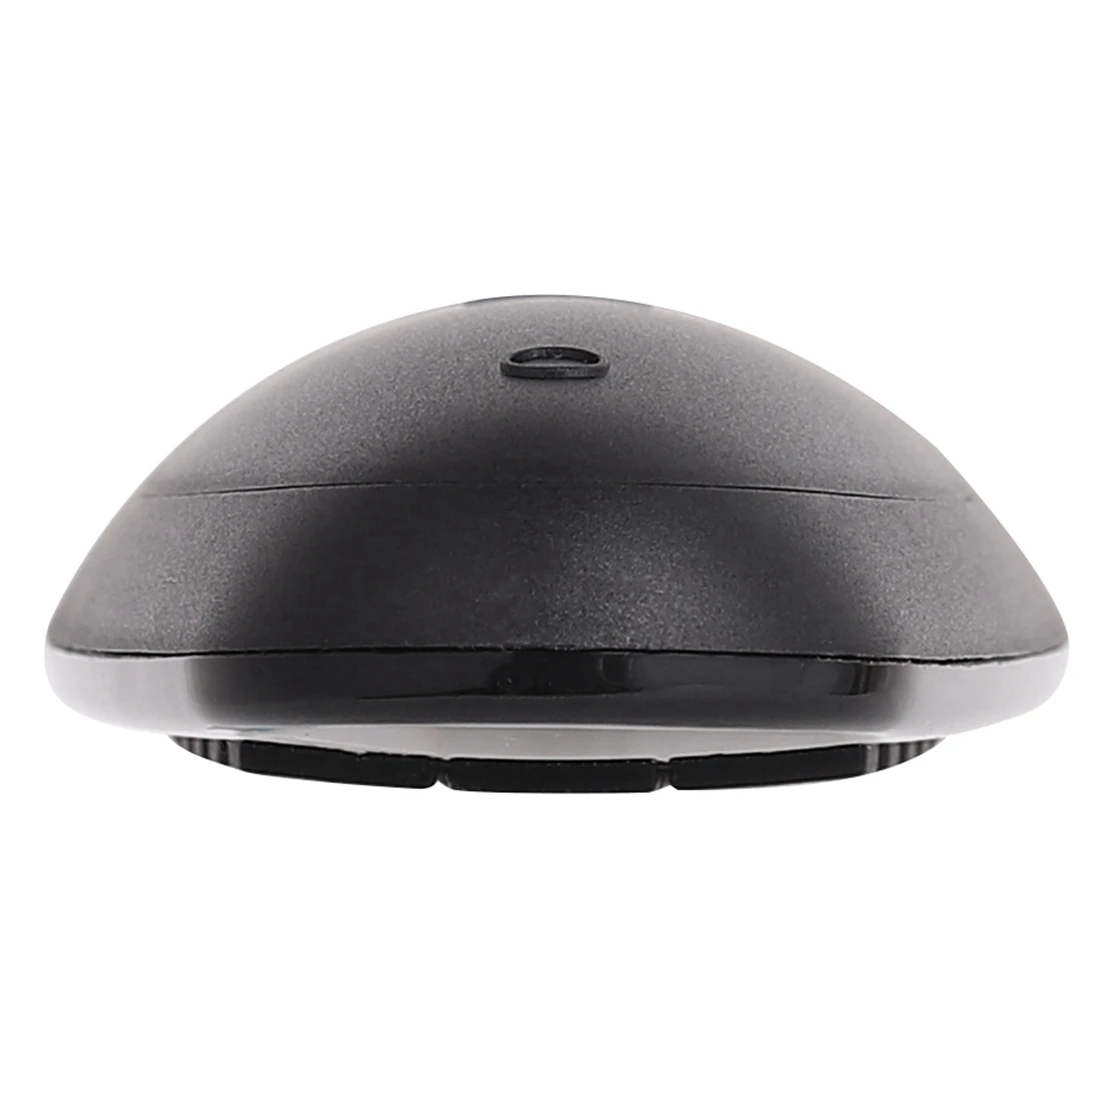 G30 air mouse голосовой пульт дистанционного управления 2,4G беспроводной микрофон гироскоп ИК обучение для Android tv box реле RF универсальный пульт дистанционного управления